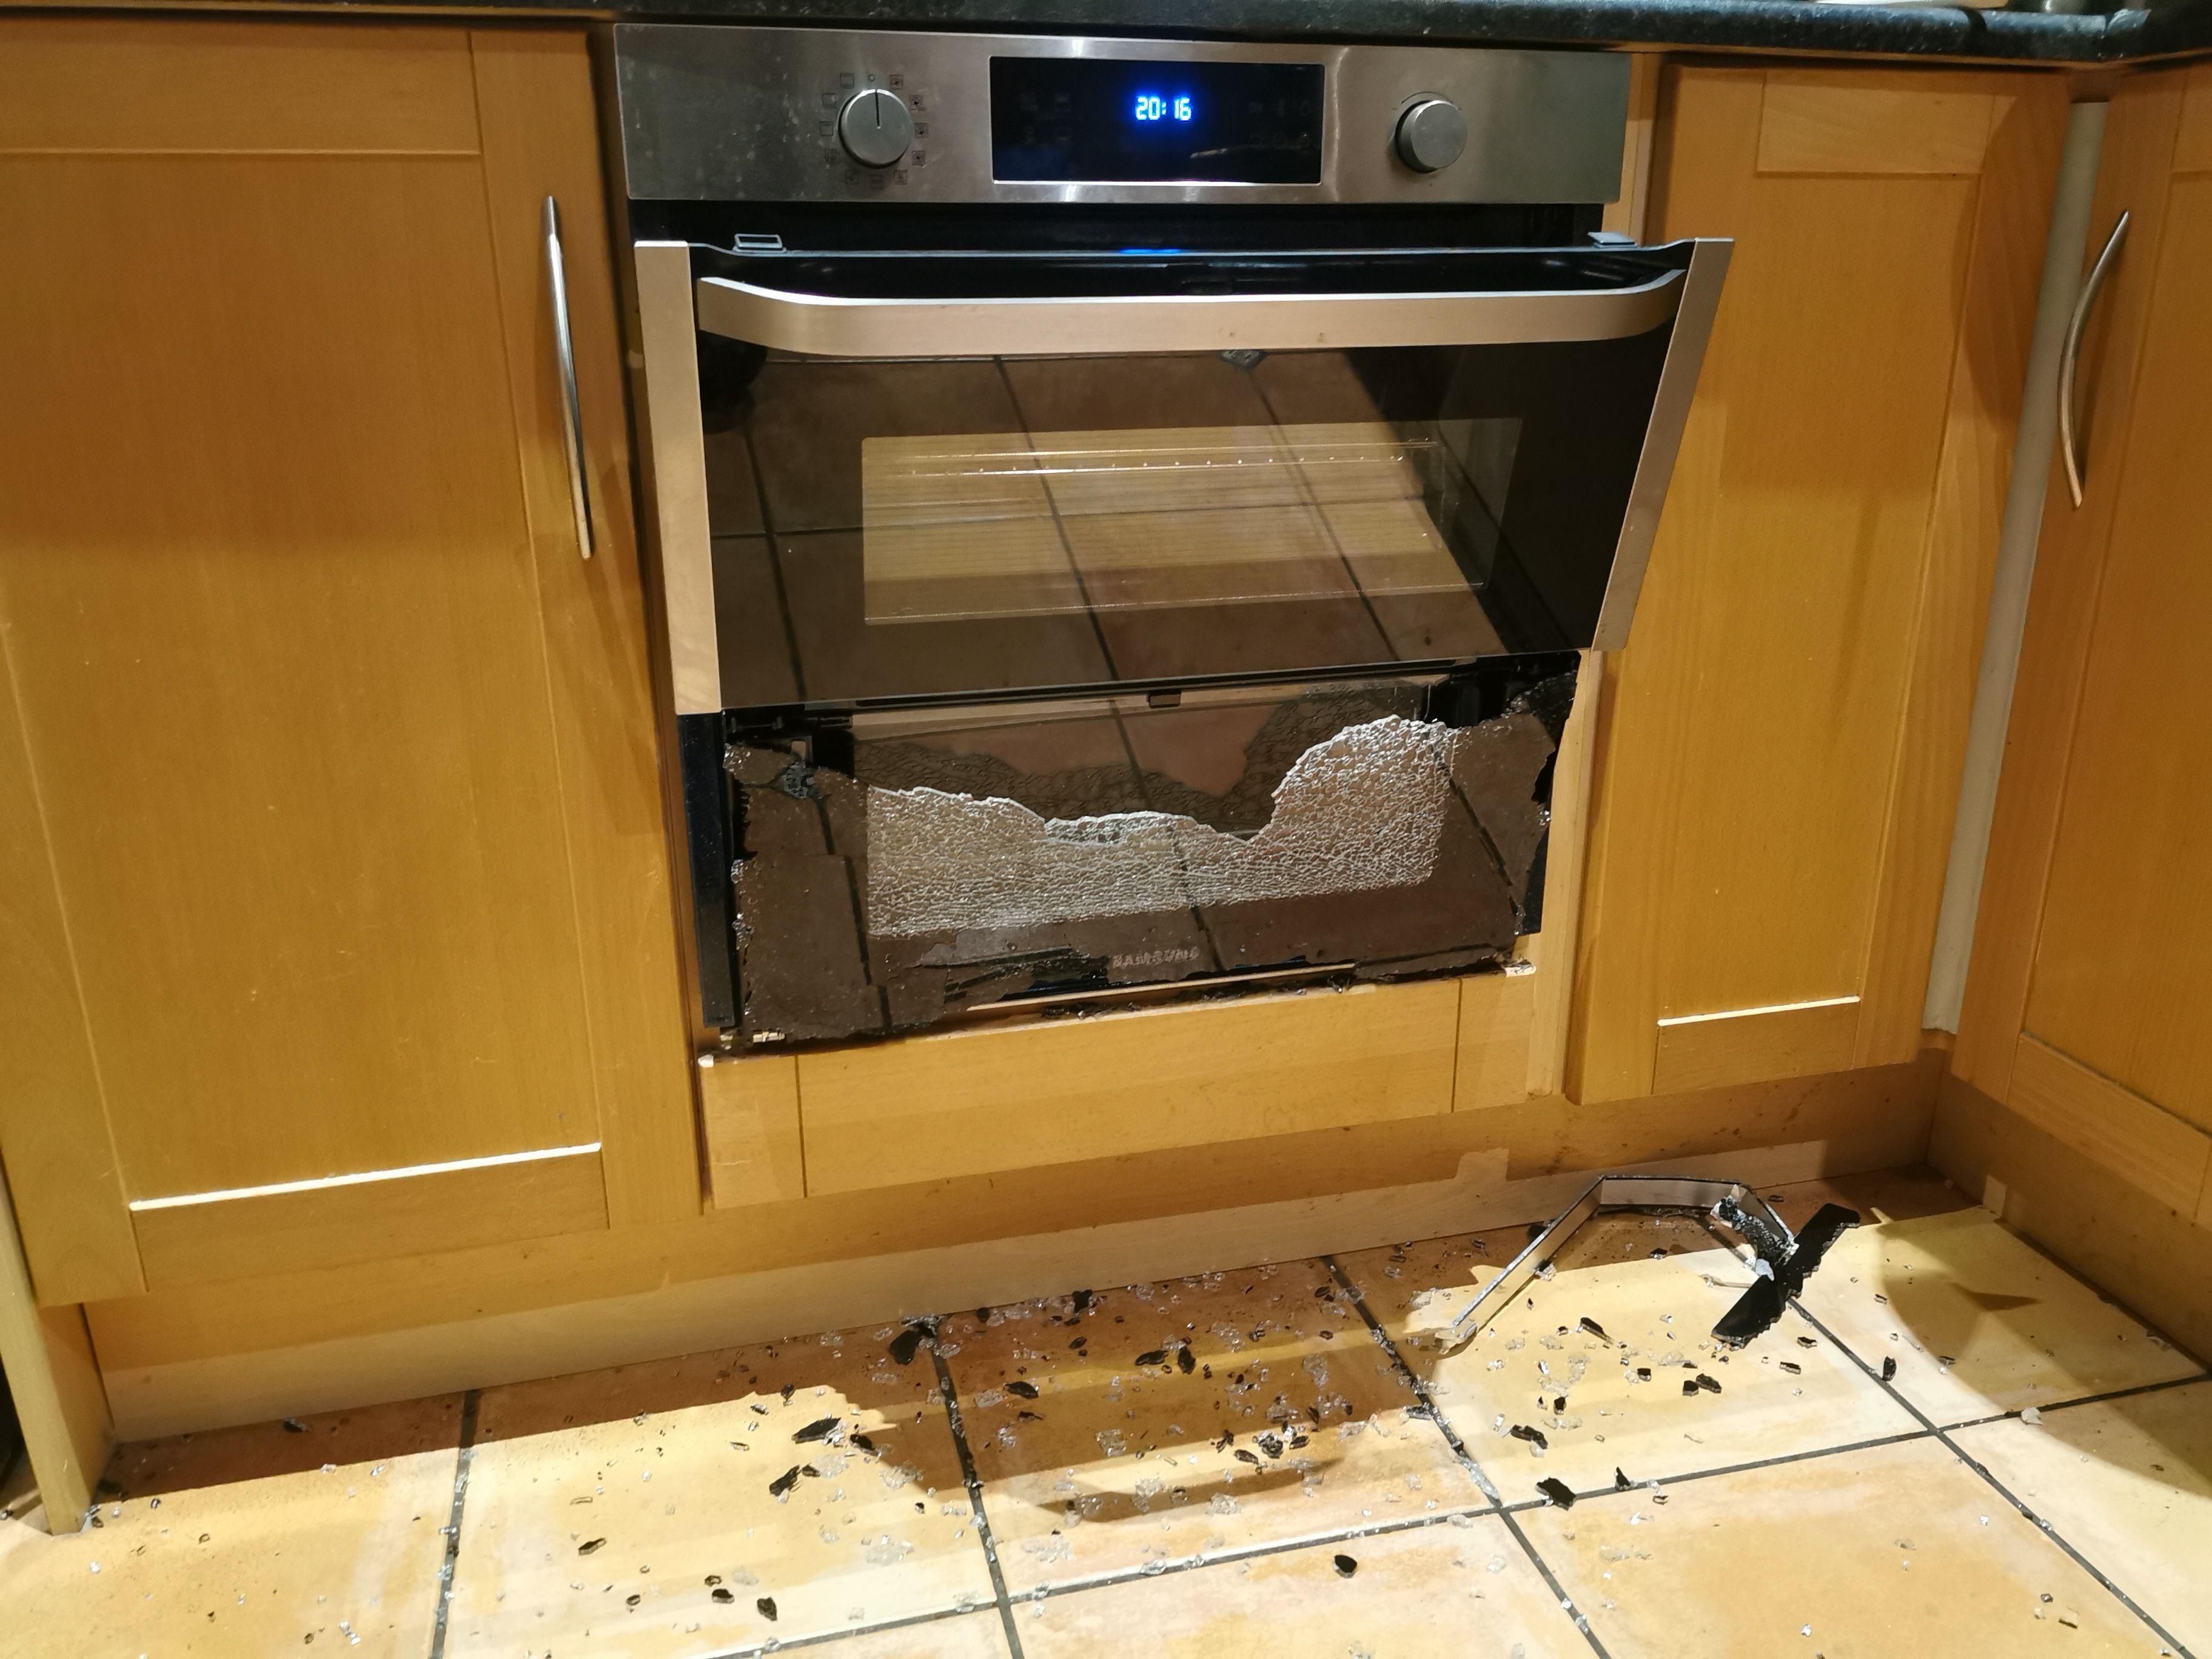 Exploding oven glass door - Samsung Community